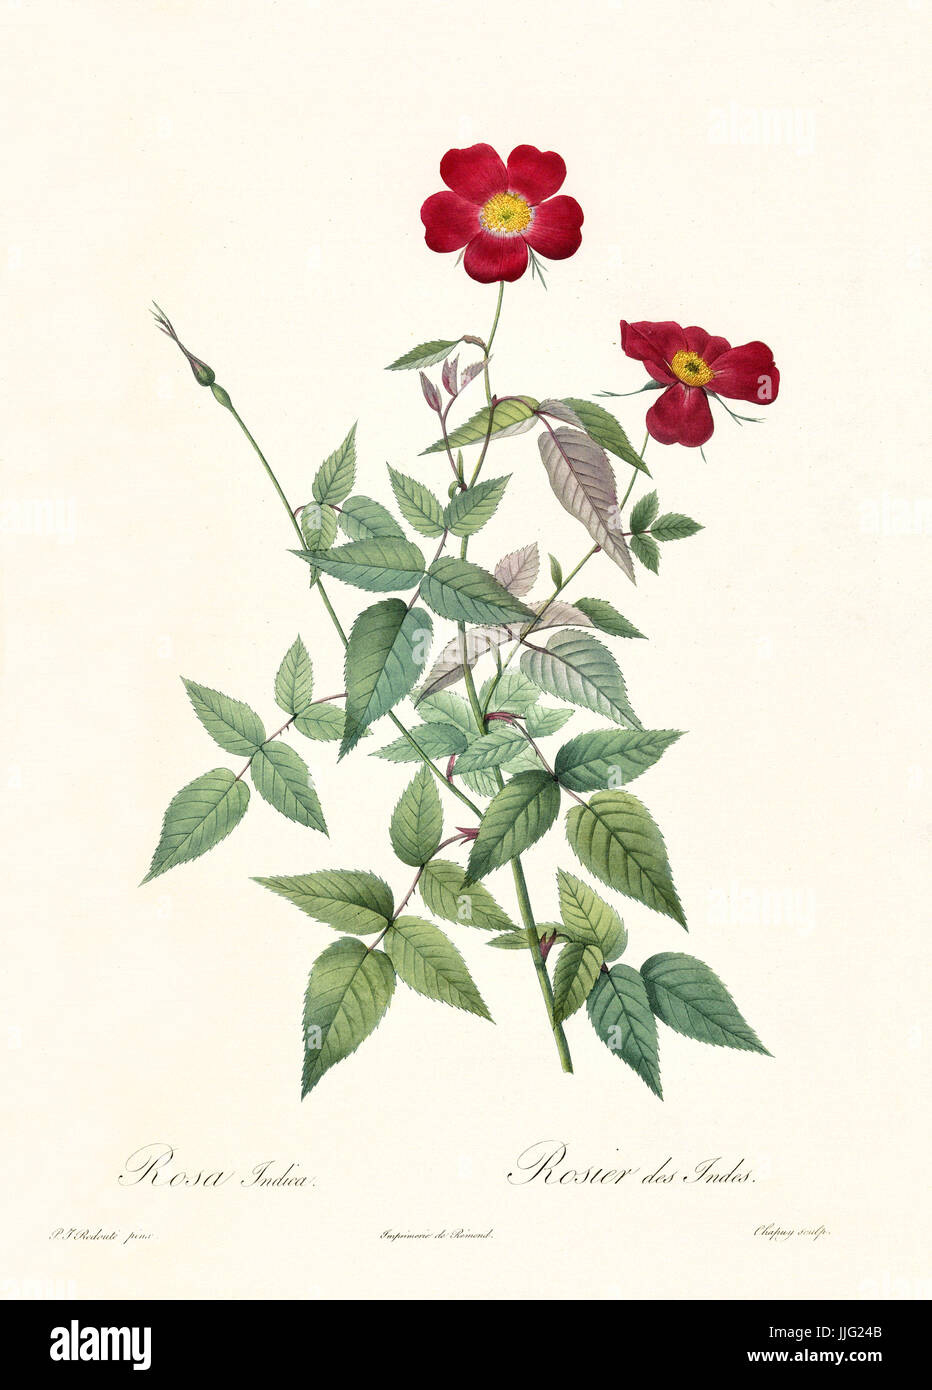 Vecchia illustrazione di rosa indica. Creato da P. R. Redoute, pubblicato su Les Roses, Imp. Firmin Didot, Parigi, 1817-24 Foto Stock